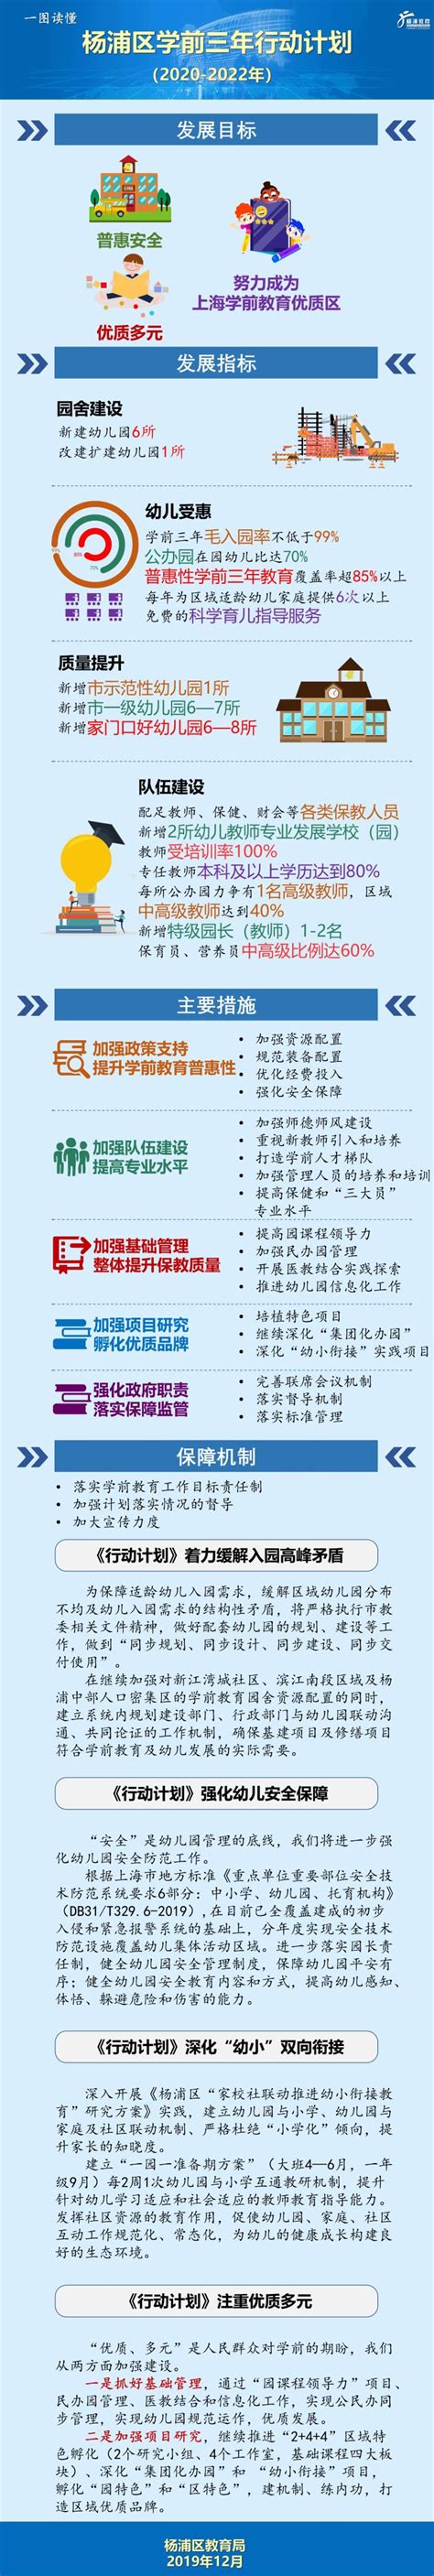 稳外贸促发展，推进跨境贸易便利化丨优化营商环境杨浦在行动⑬_上海市杨浦区人民政府